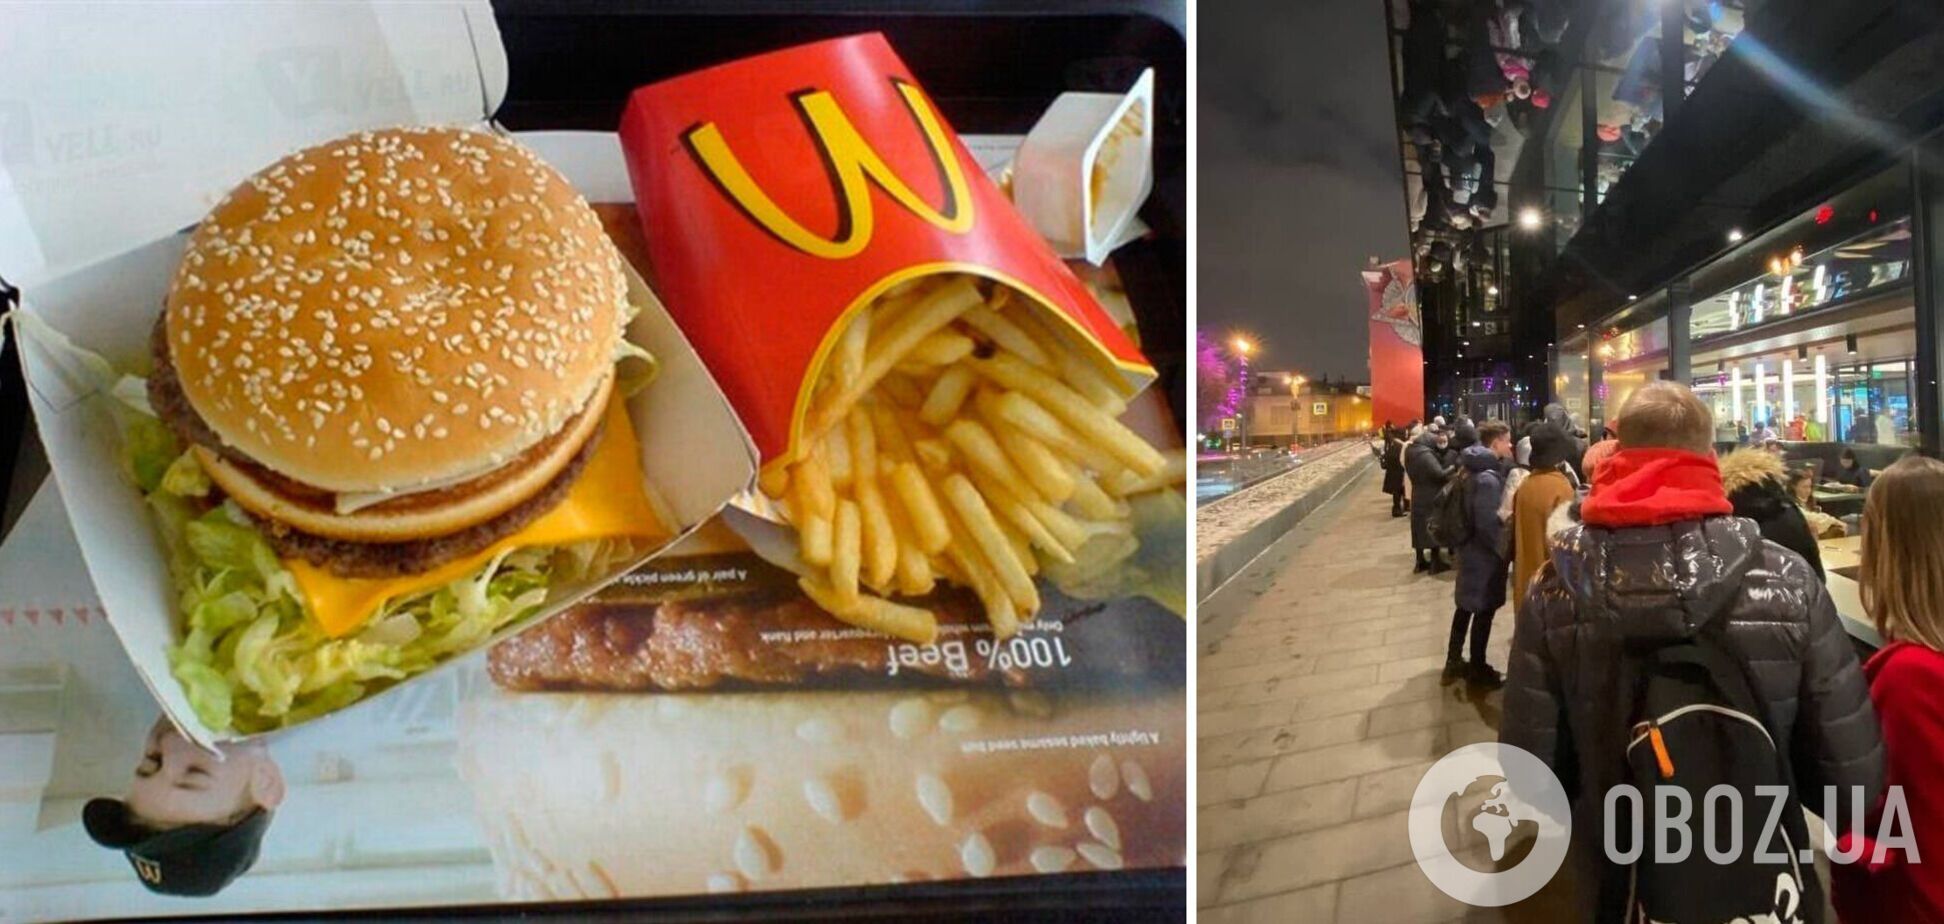 Після новини про закриття McDonald's у Москві утворилися кілометрові черги за гамбургерами. Фото і відео